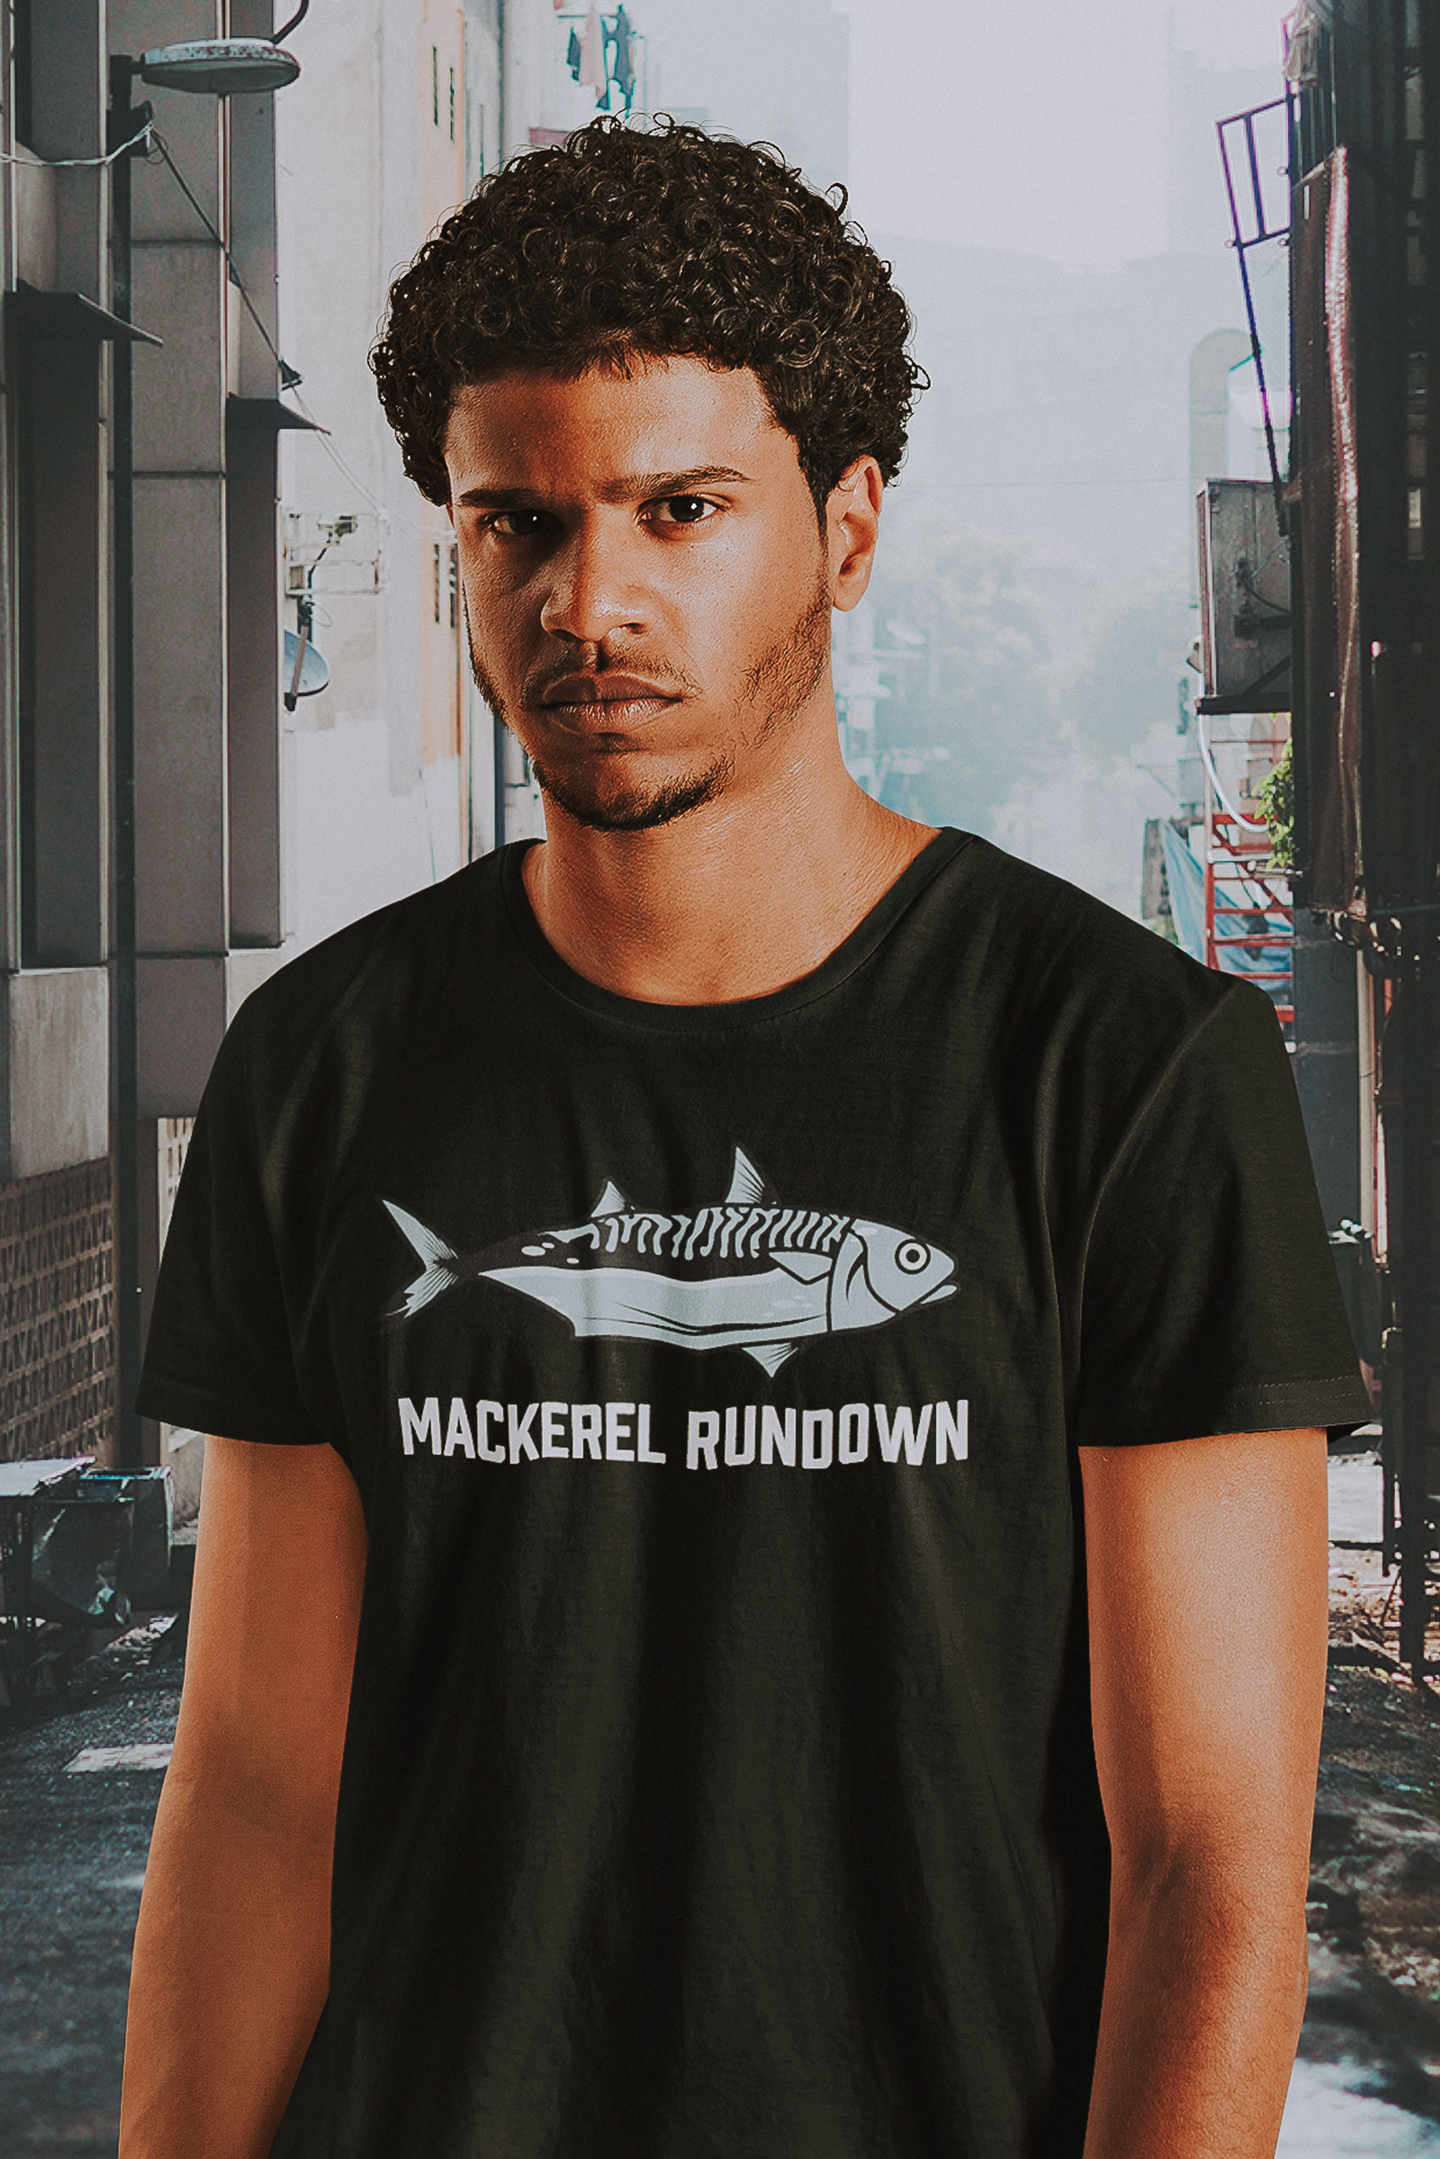 Mackerel Rundown - Men's